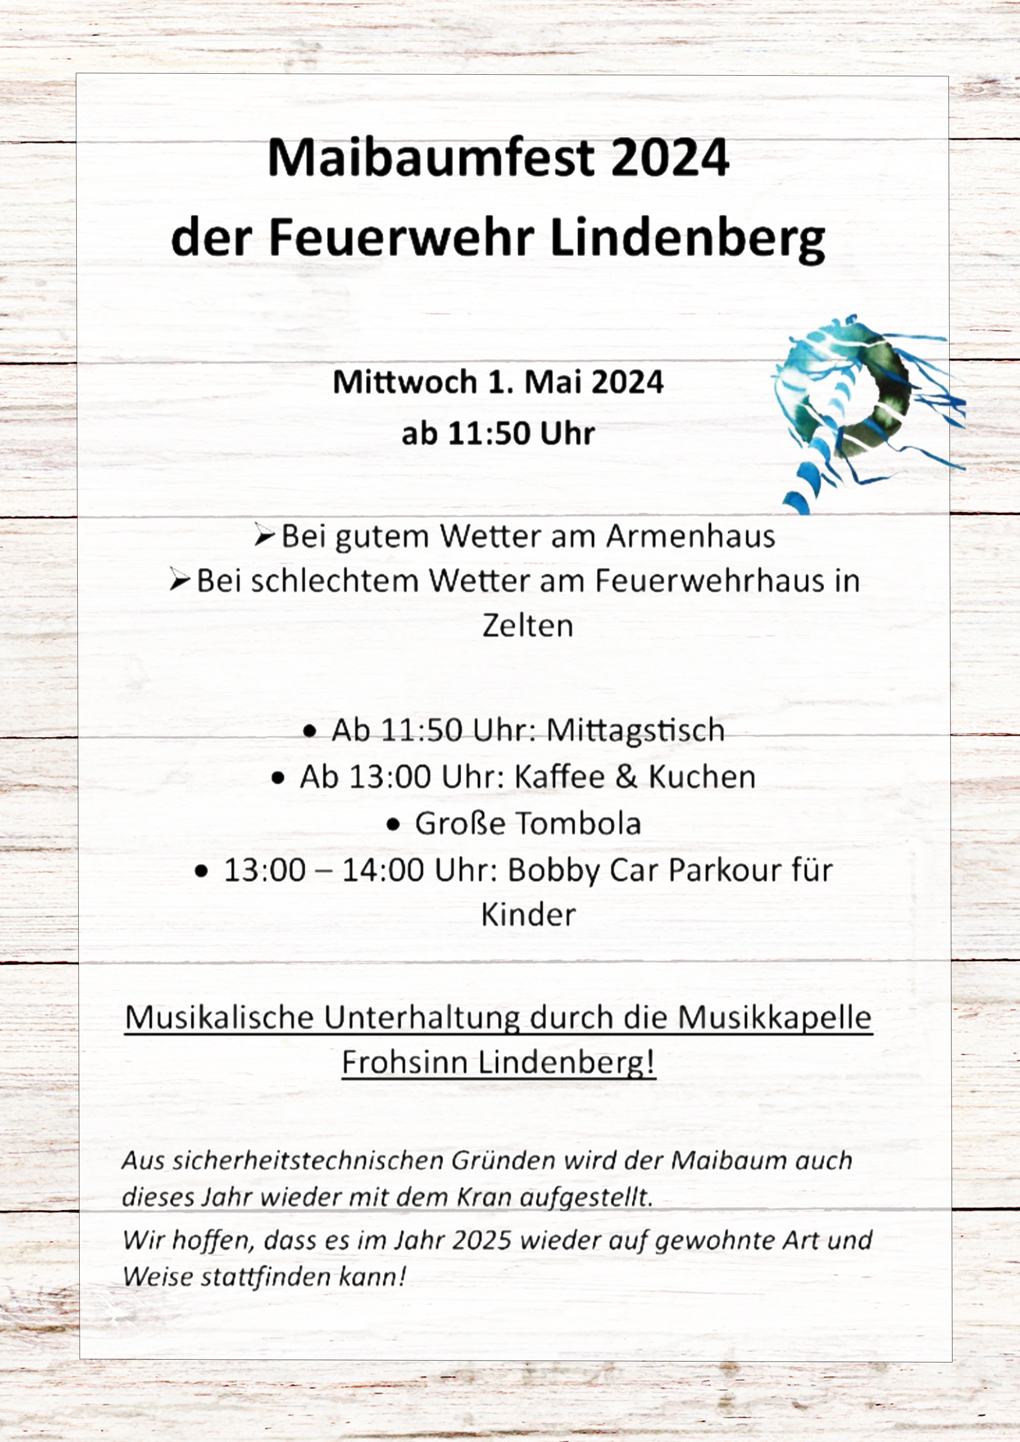 Maibaumfest 2024 der Feuerwehr Lindenberg